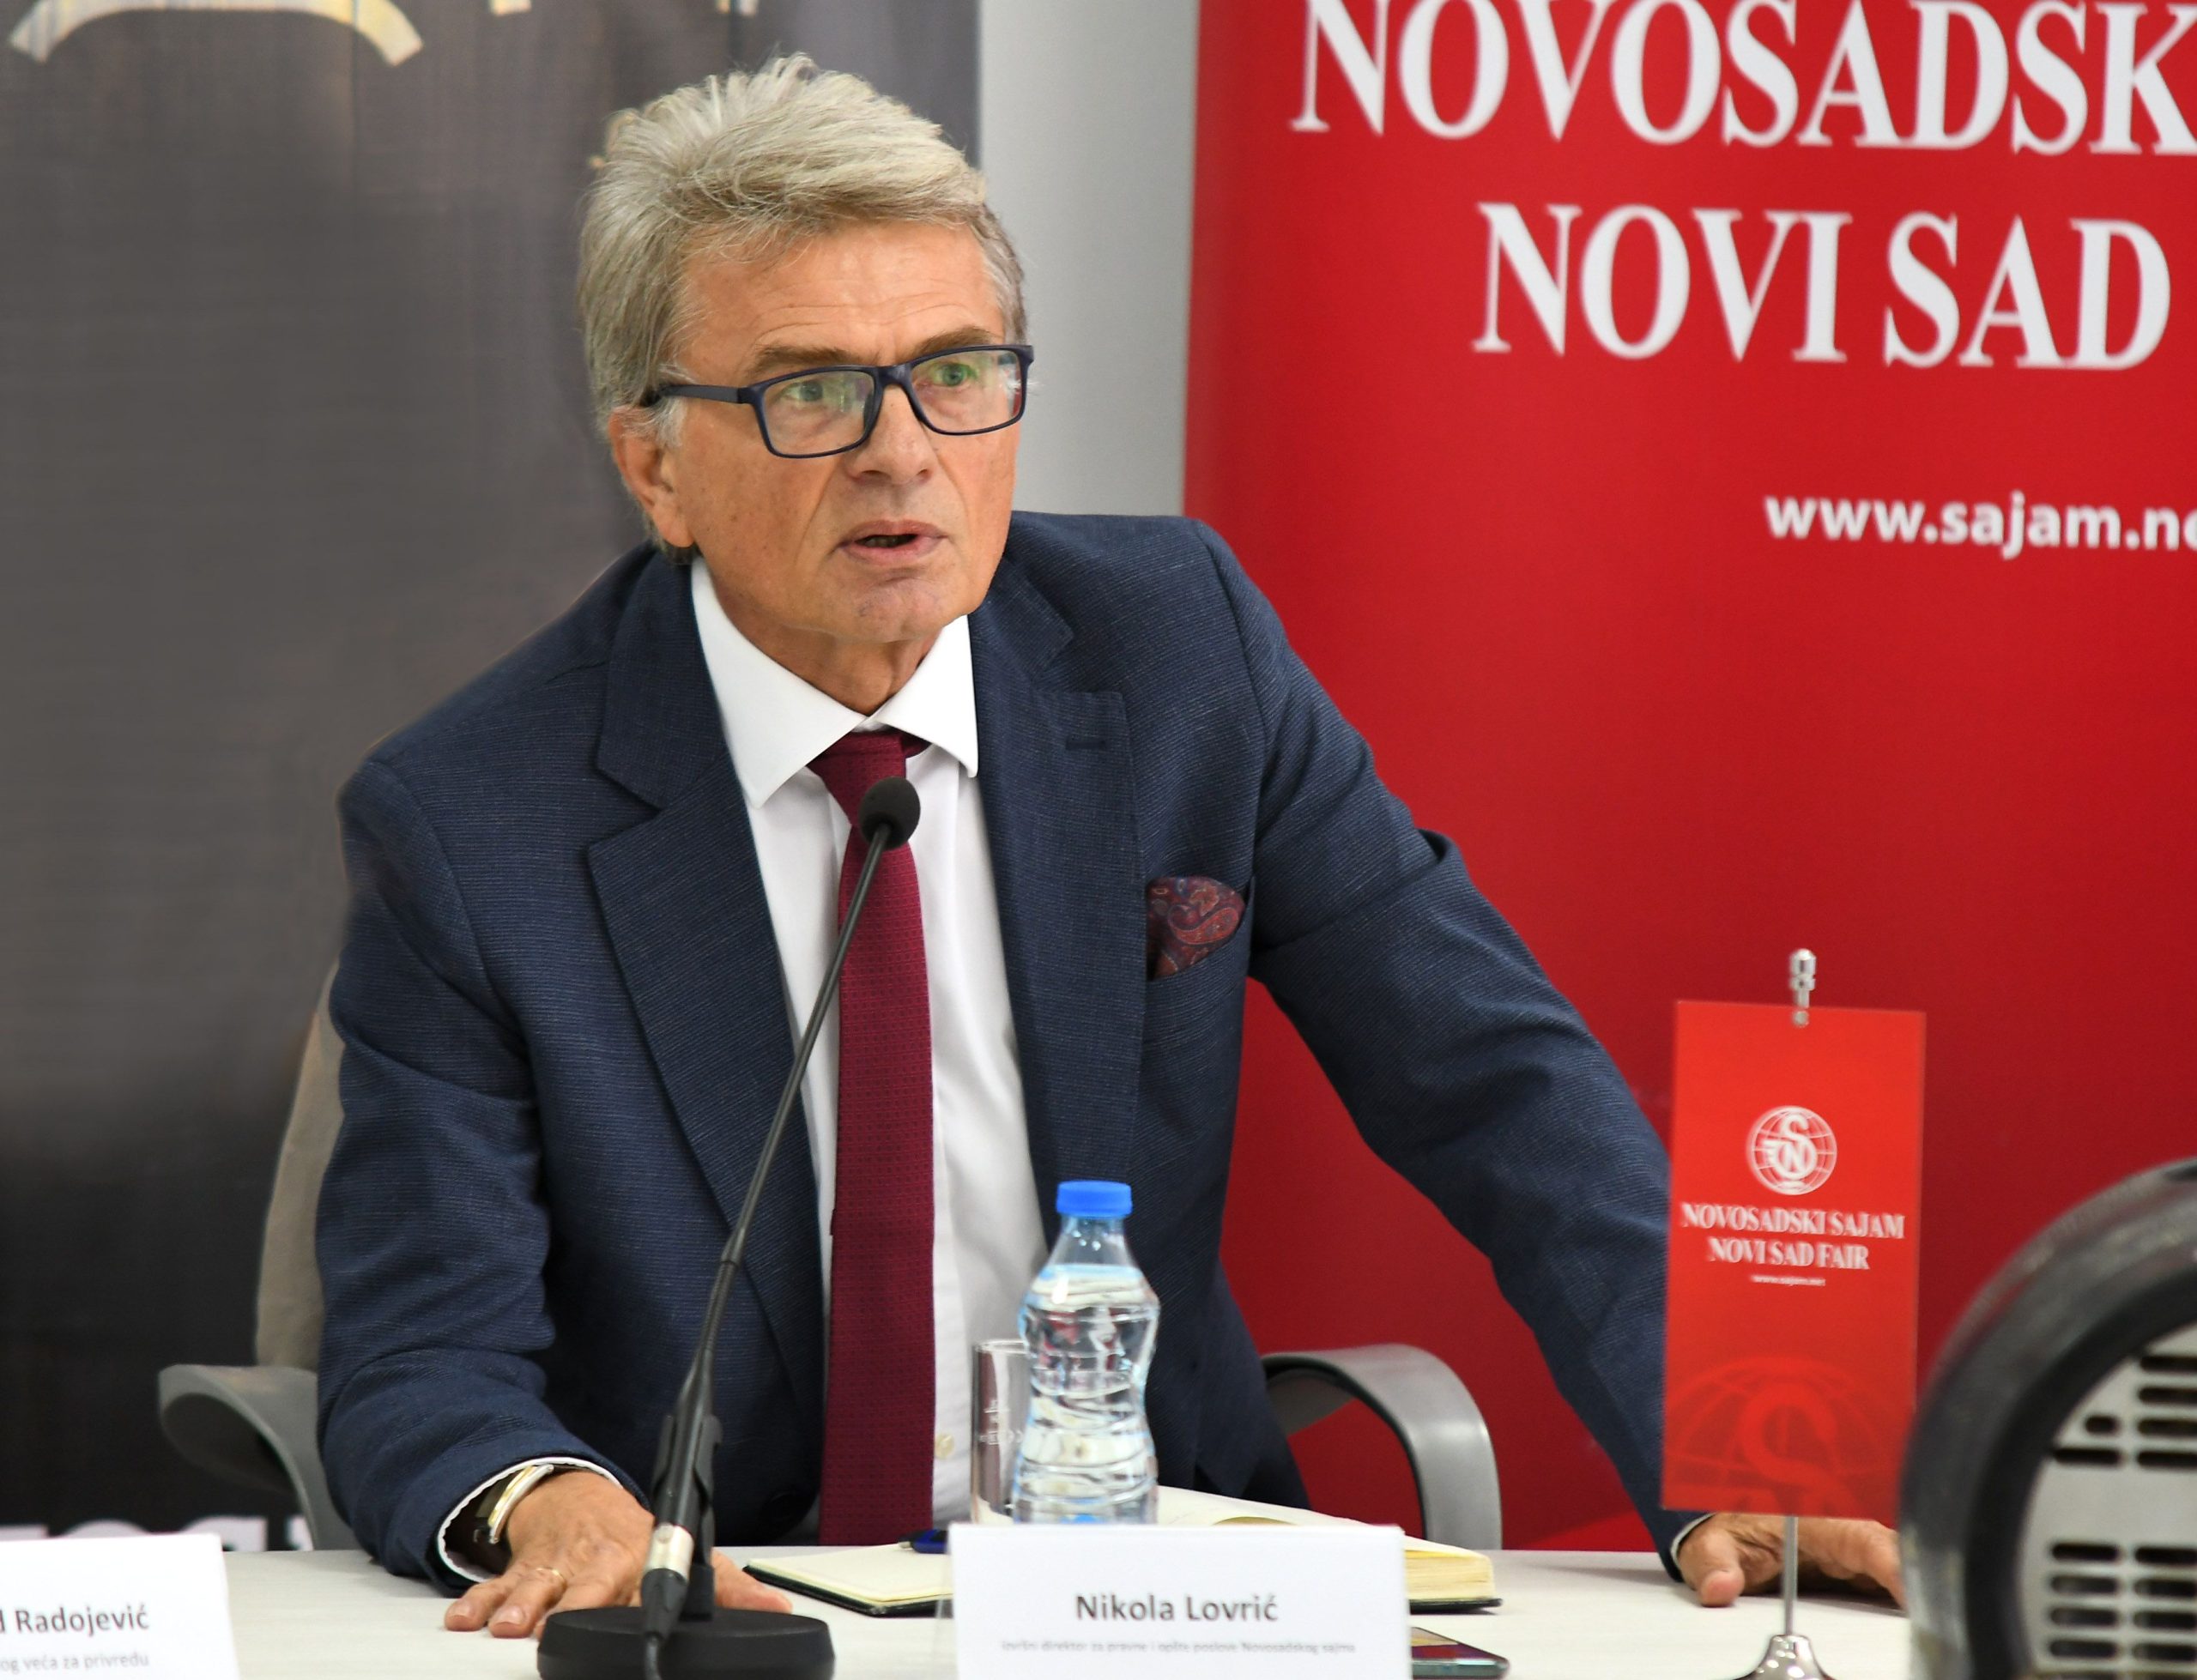 Nikola Lovrić